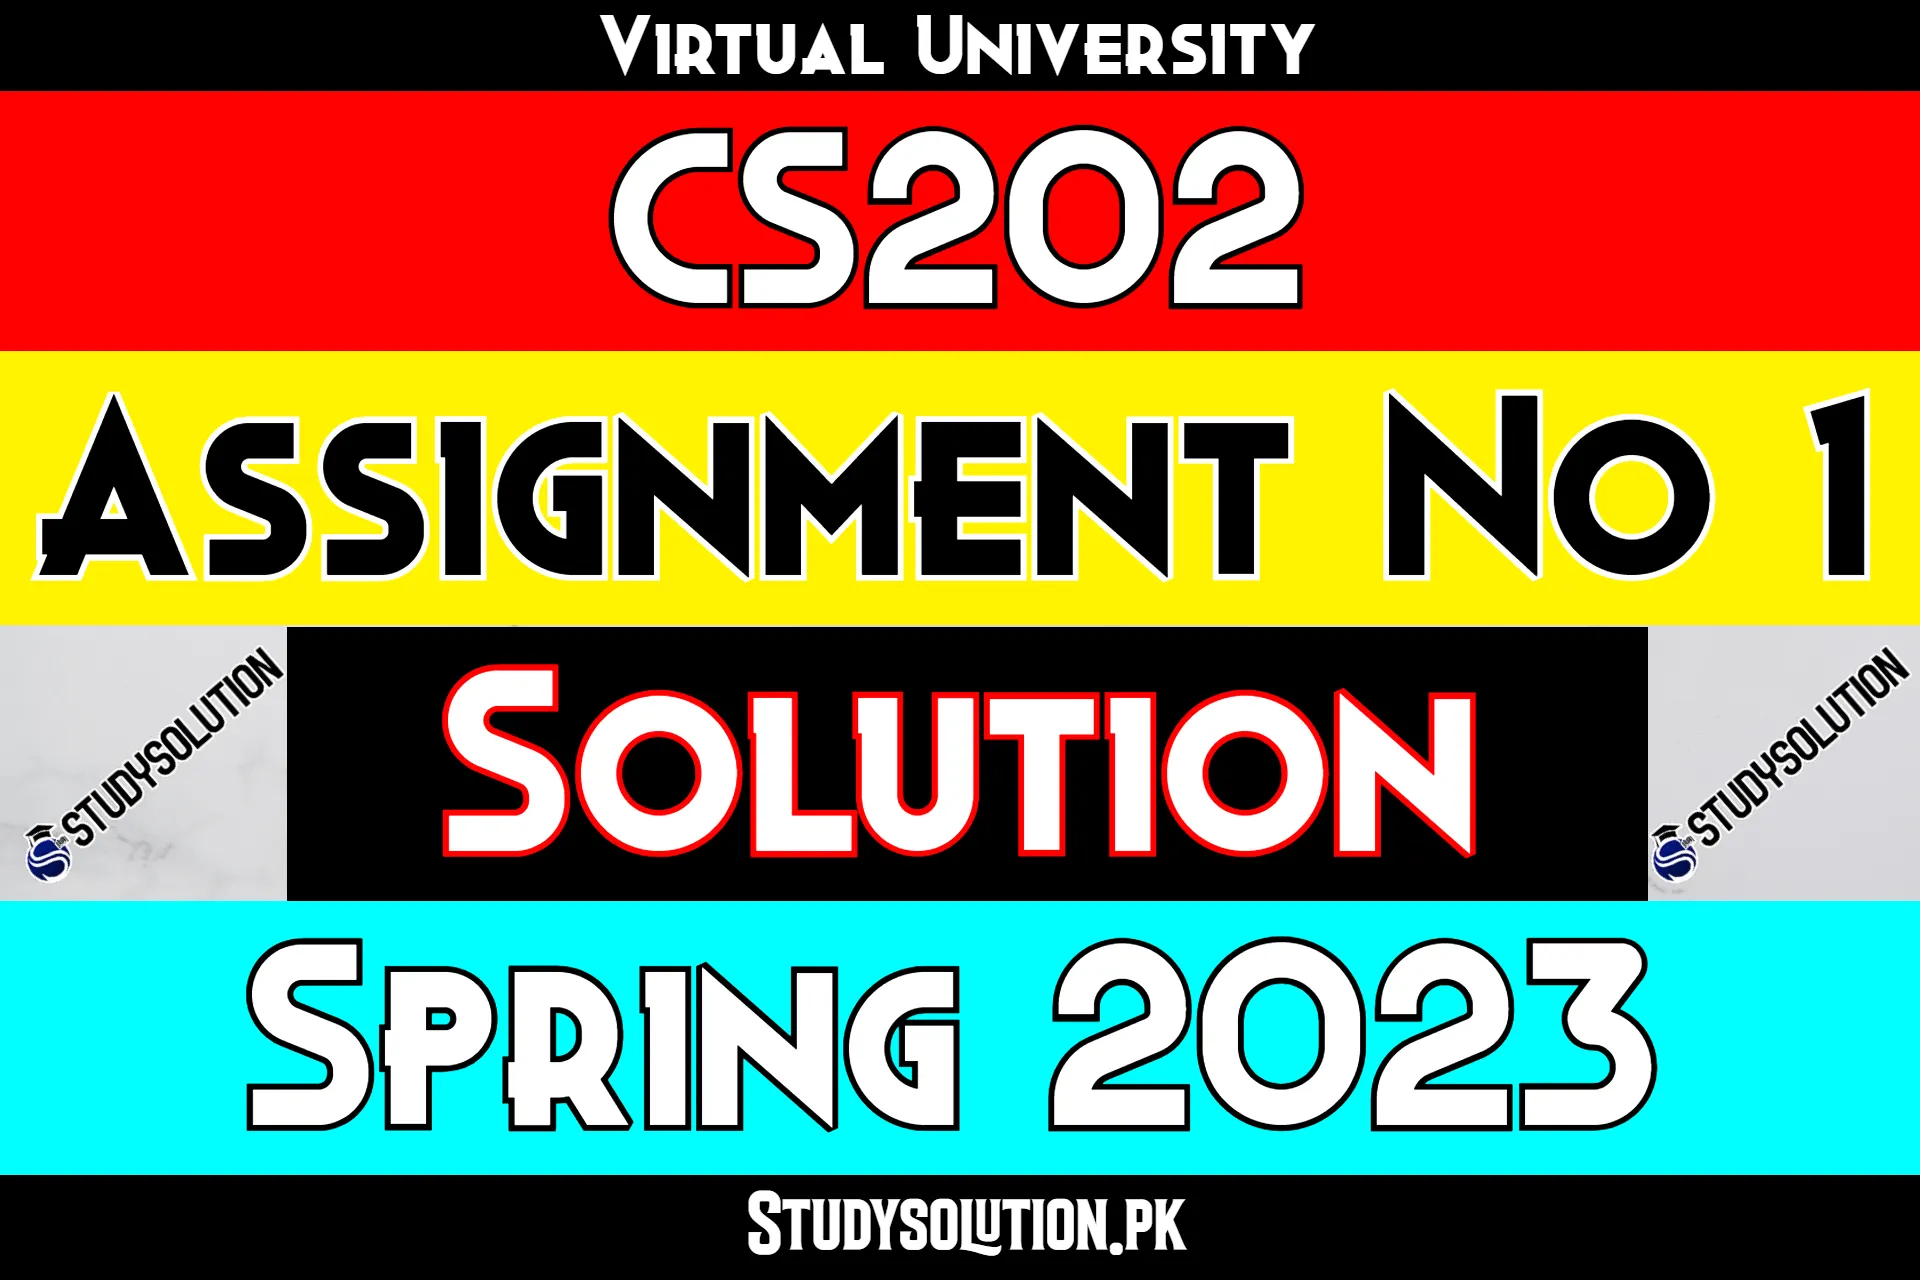 CS202 Assignment No 1 Solution Spring 2023